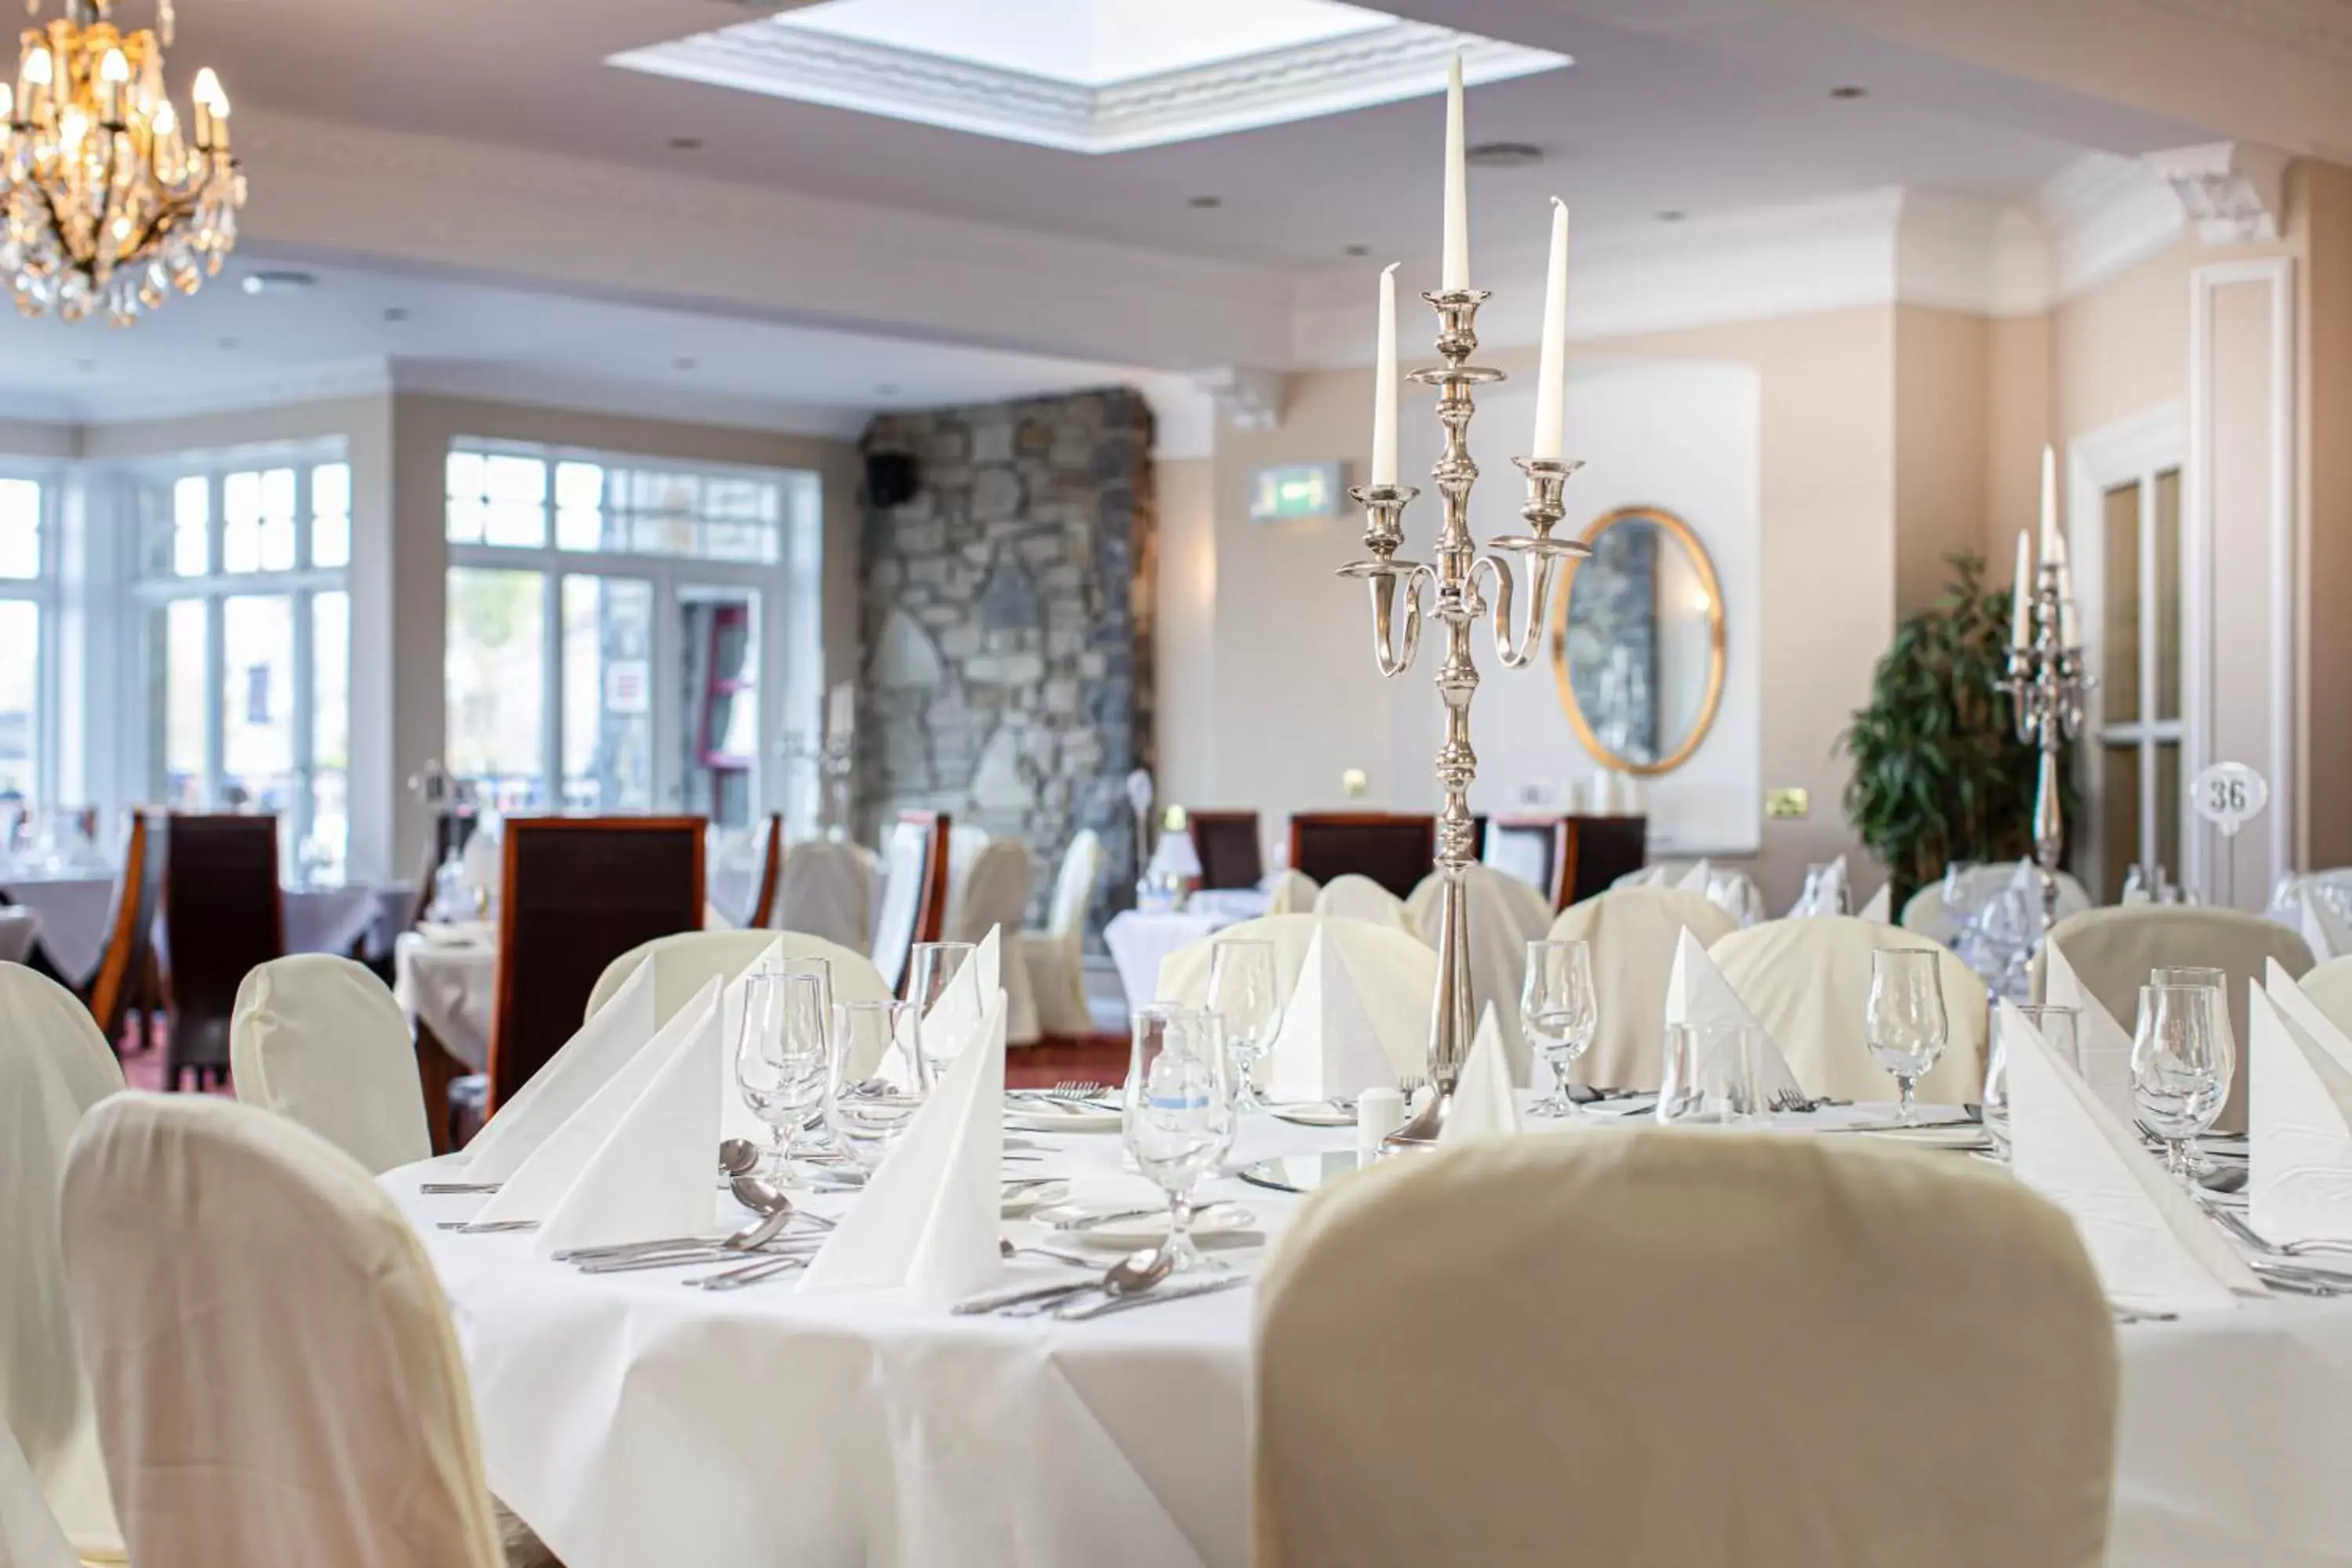 Banquet/Function facilities, Banquet Facilities in Ballina Manor Hotel